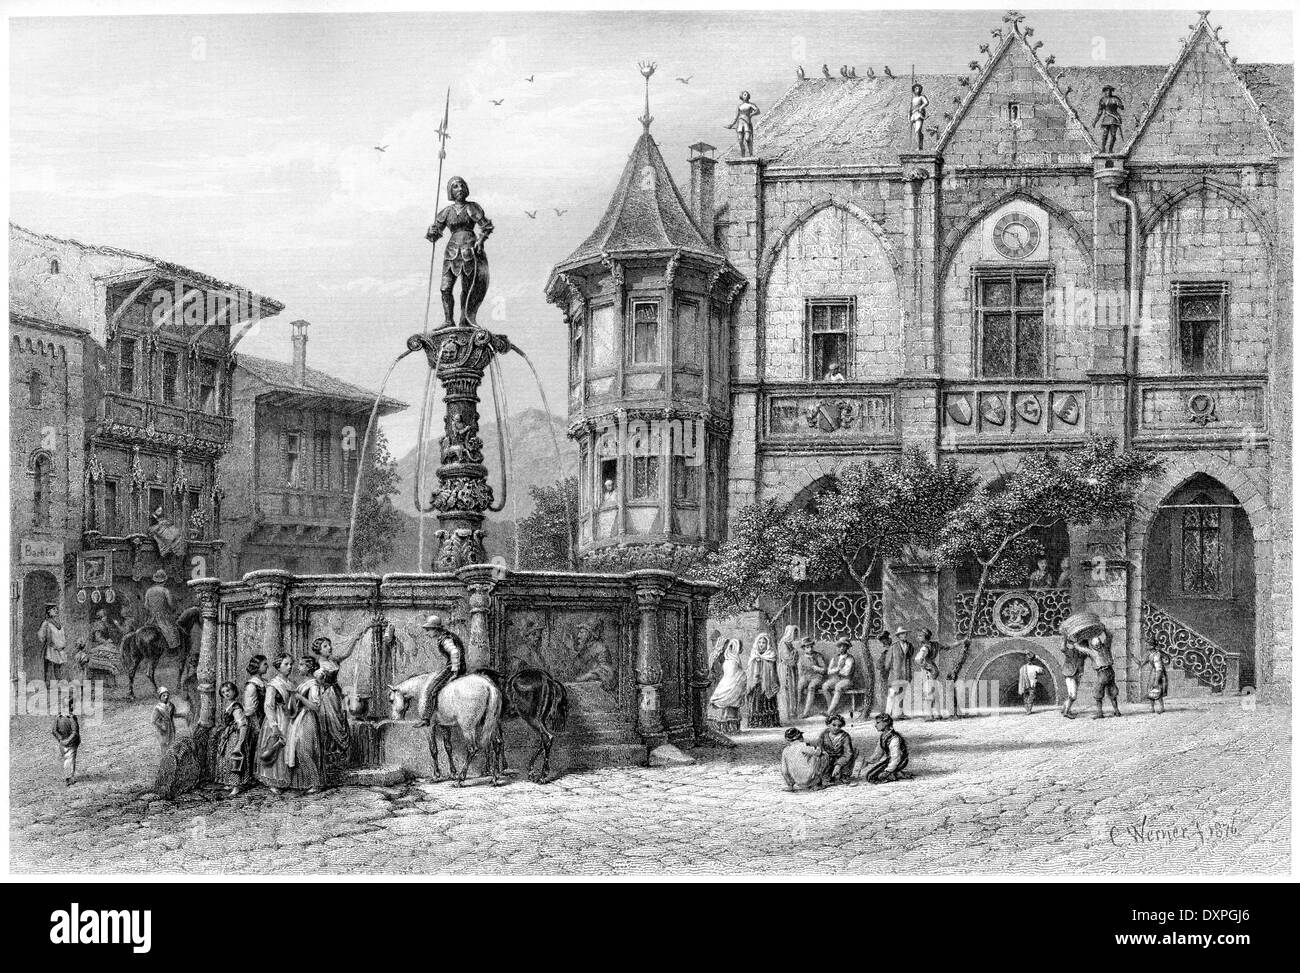 Eine Gravur mit dem Titel "The Fassadenfront, Hildesheim" gescannt mit hoher Auflösung aus einem Buch etwa 1878 veröffentlicht. Stockfoto